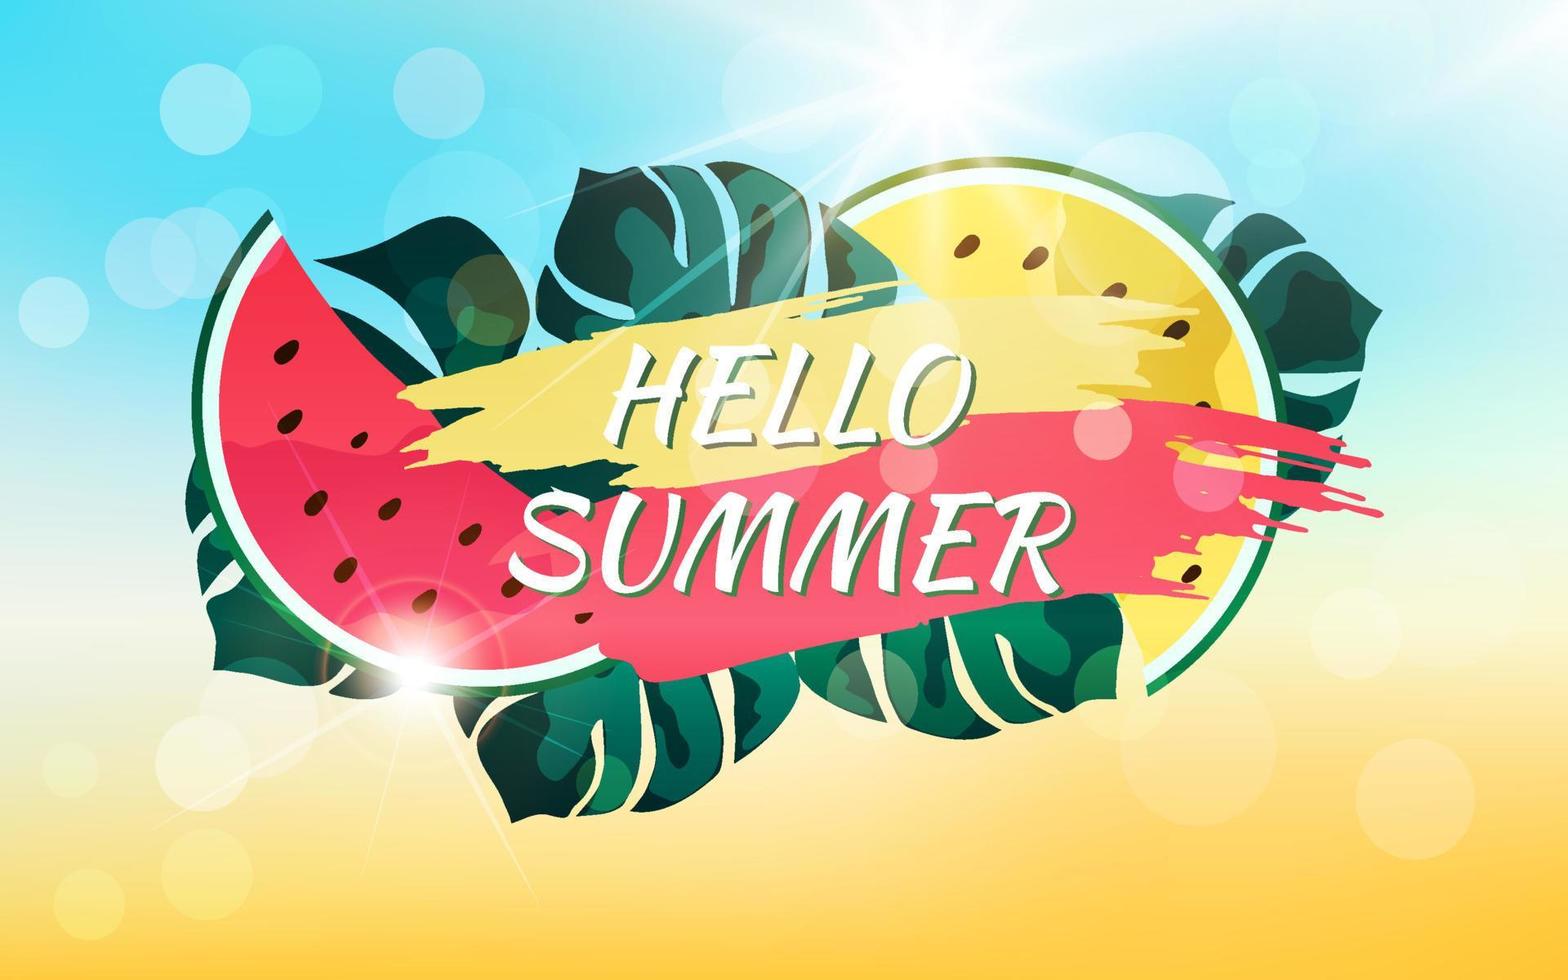 abstrakter Sommerhintergrund mit Sonnenstrahlen, Bokeh-Effekt und Text. Hallo Sommer. Illustration von Monstera-Blättern, Wassermelonenscheiben, Wolken und Himmel mit strahlender Sonne. vektor